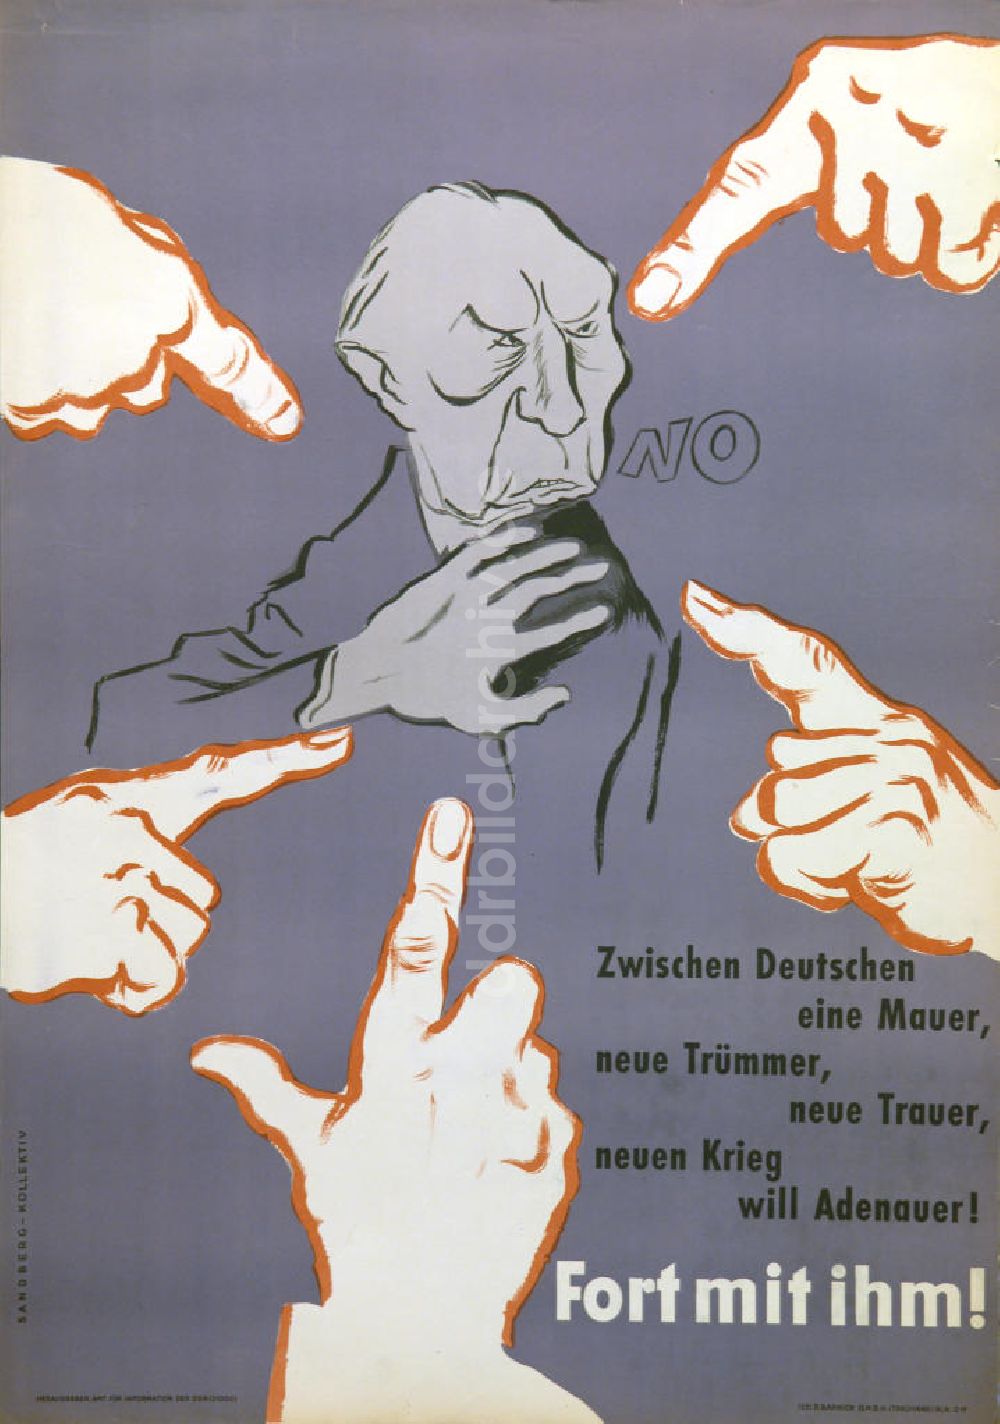 Berlin: Plakat von Herbert Sandberg Fort mit ihm! aus dem Jahr 1958